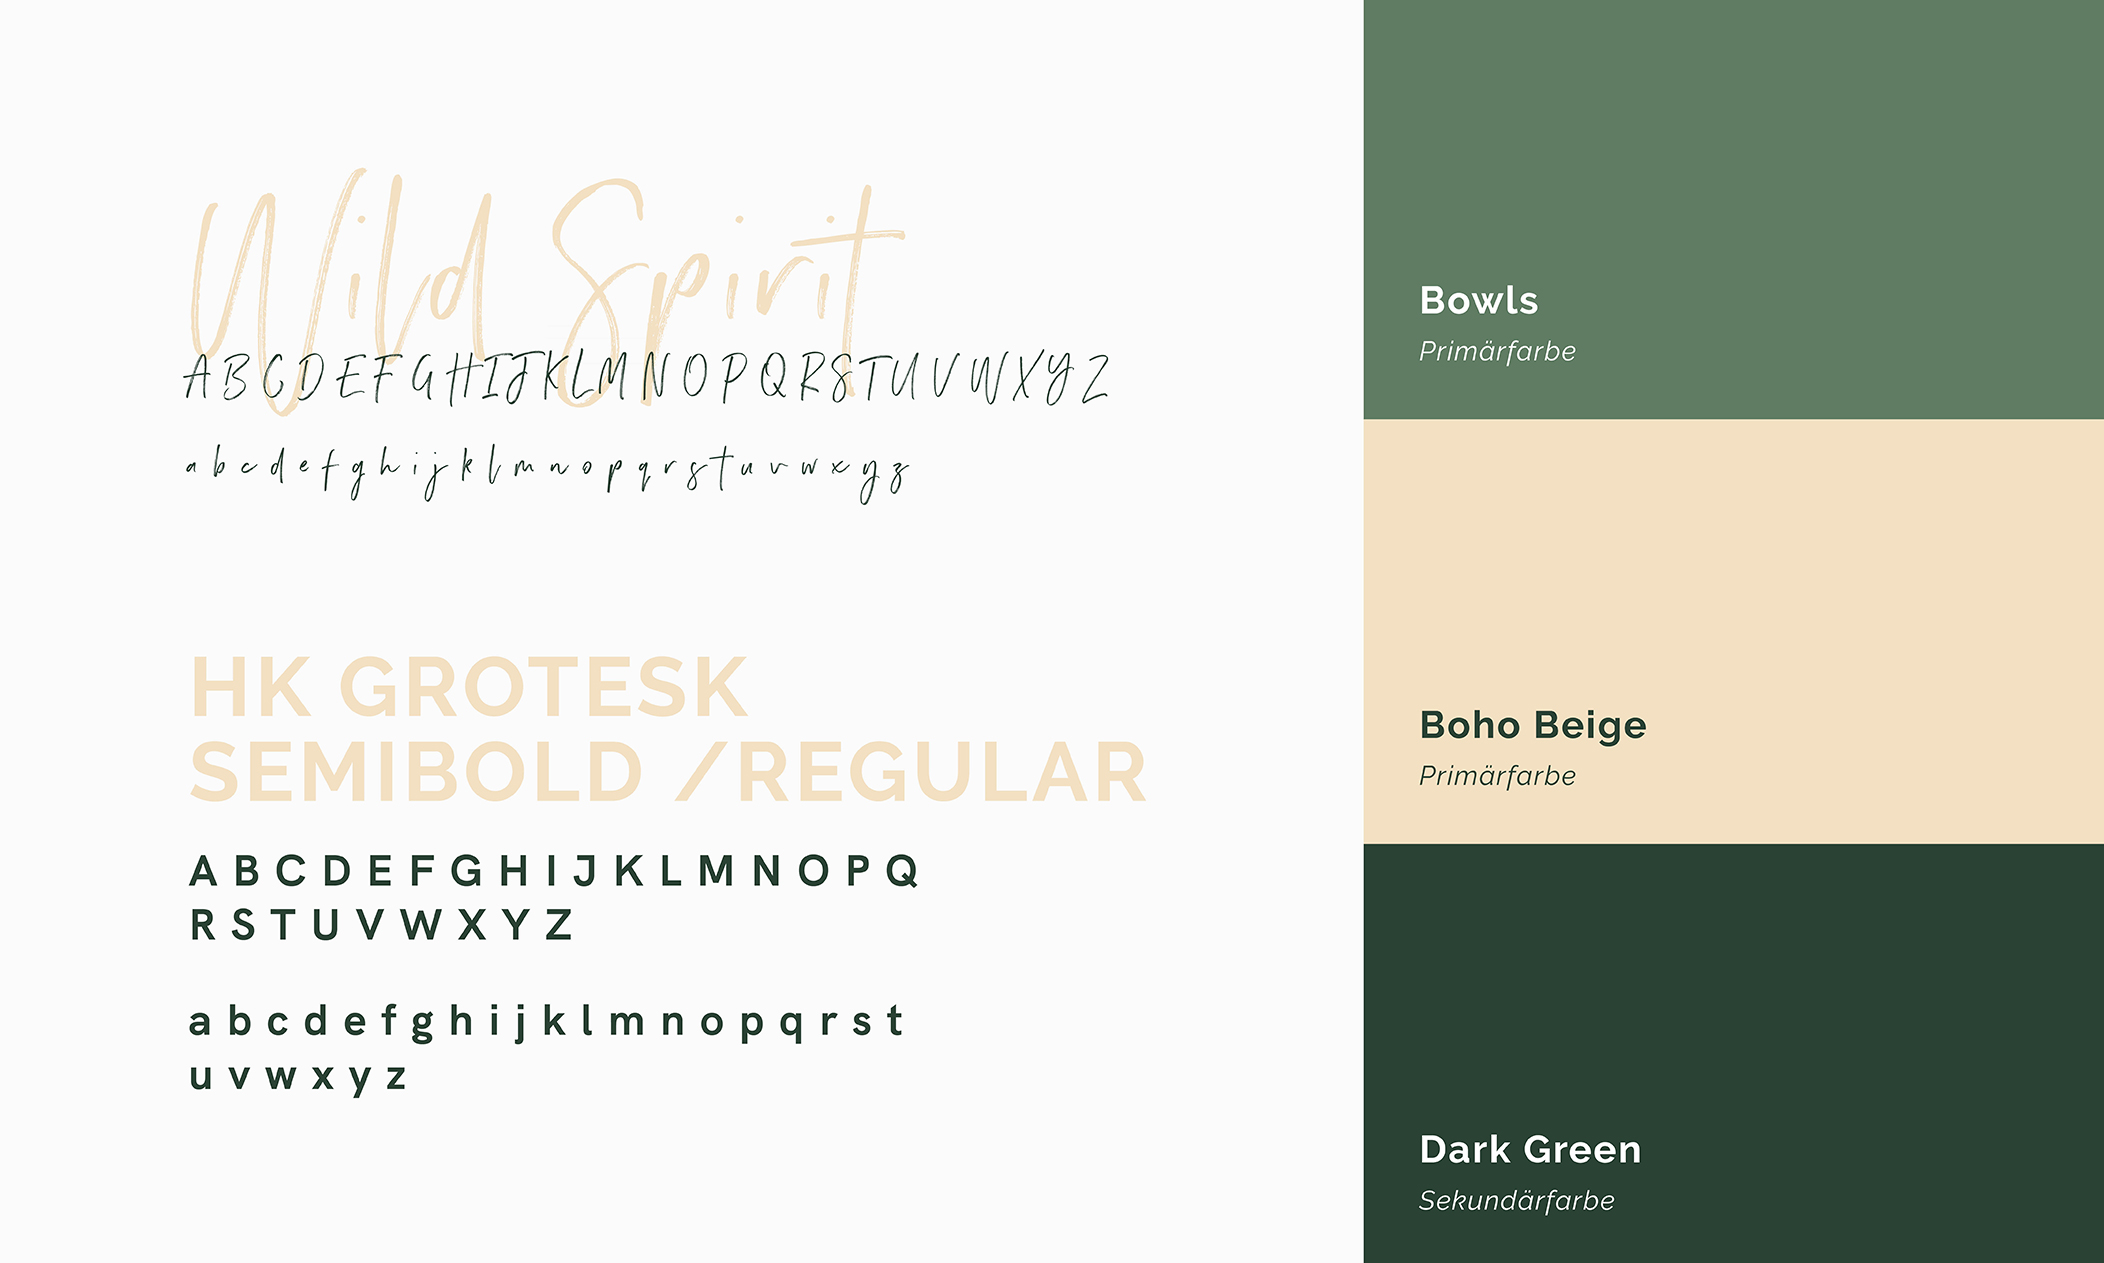 boho_bowls_colors_fonts_corporate_design_packaging_teamlemke_werbeagentur_aachen_2104x1264